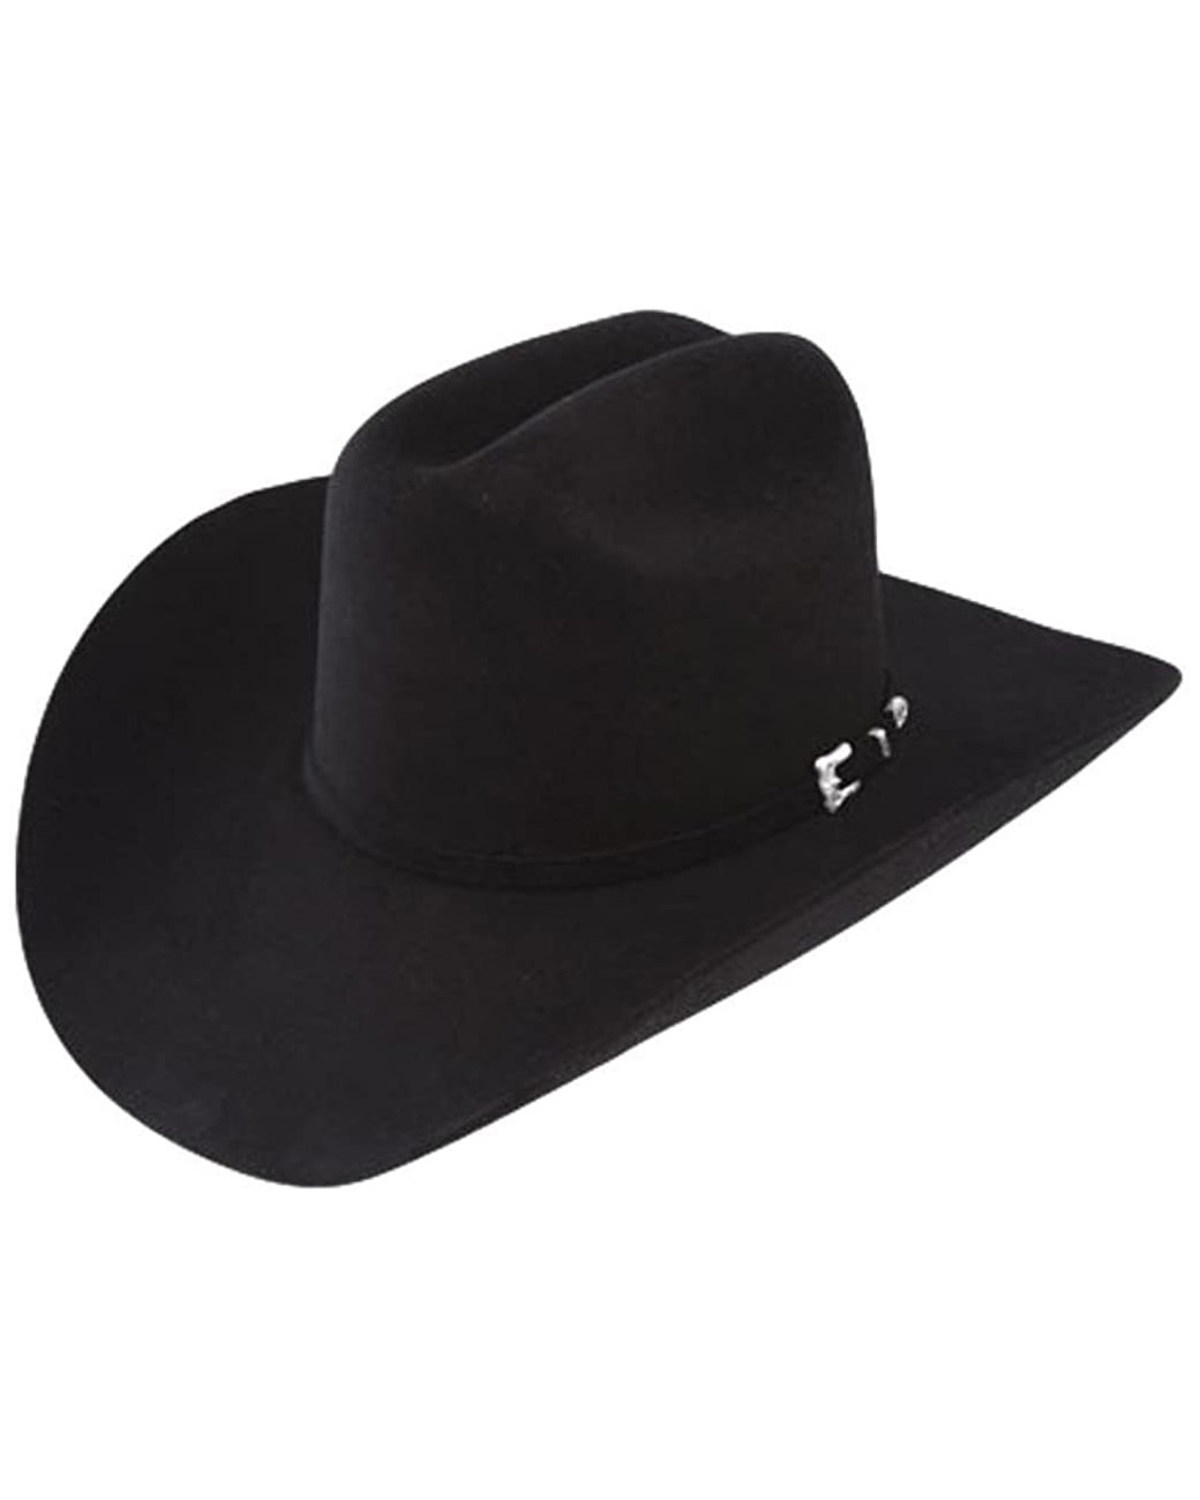 Resistol Black Gold 20X Felt Cowboy Hat